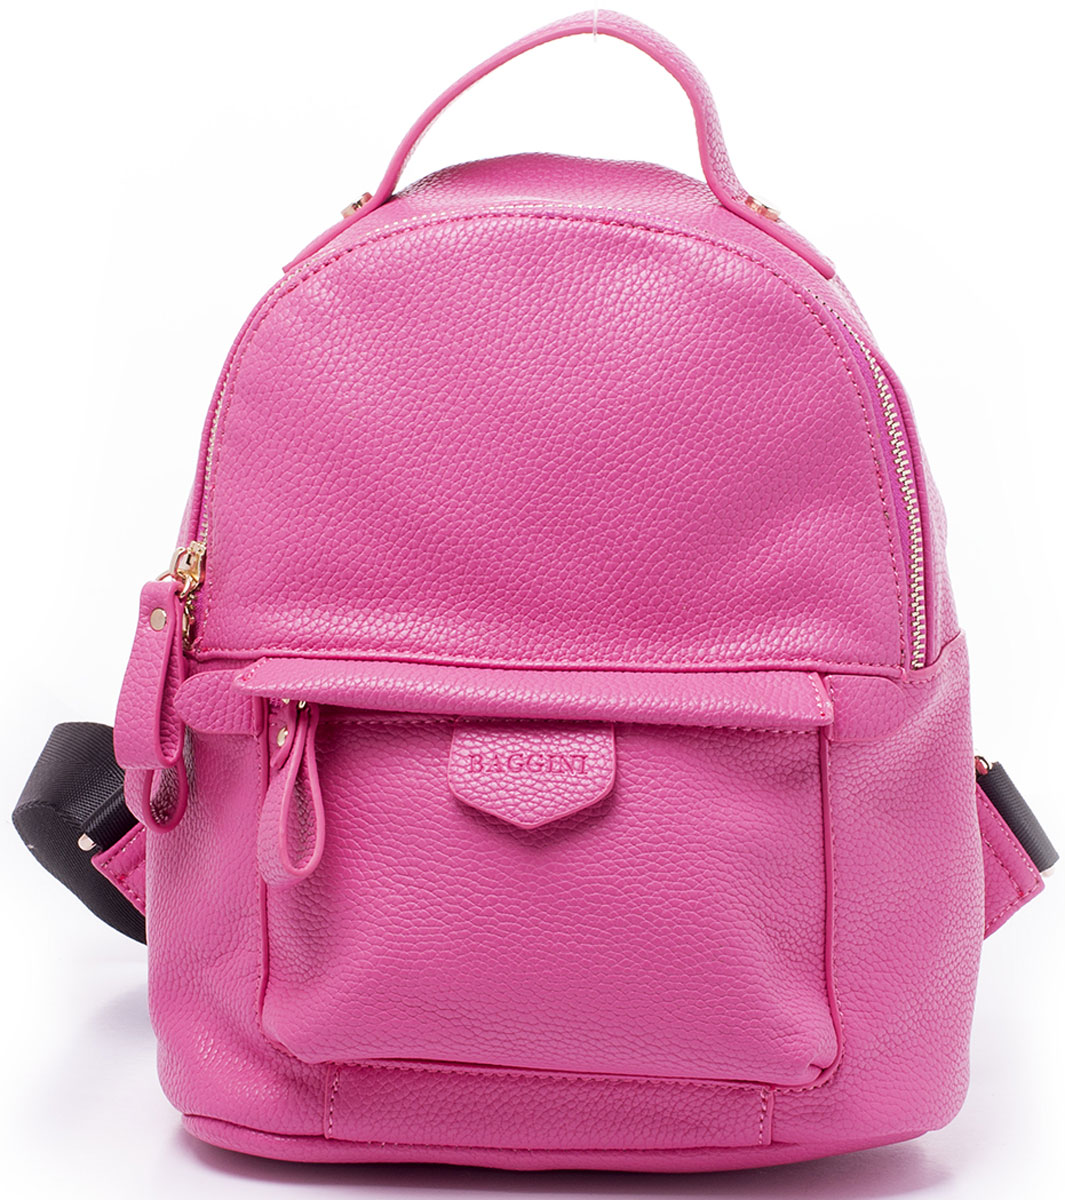 Рюкзак женский Baggini, цвет: розовый. 29882/64